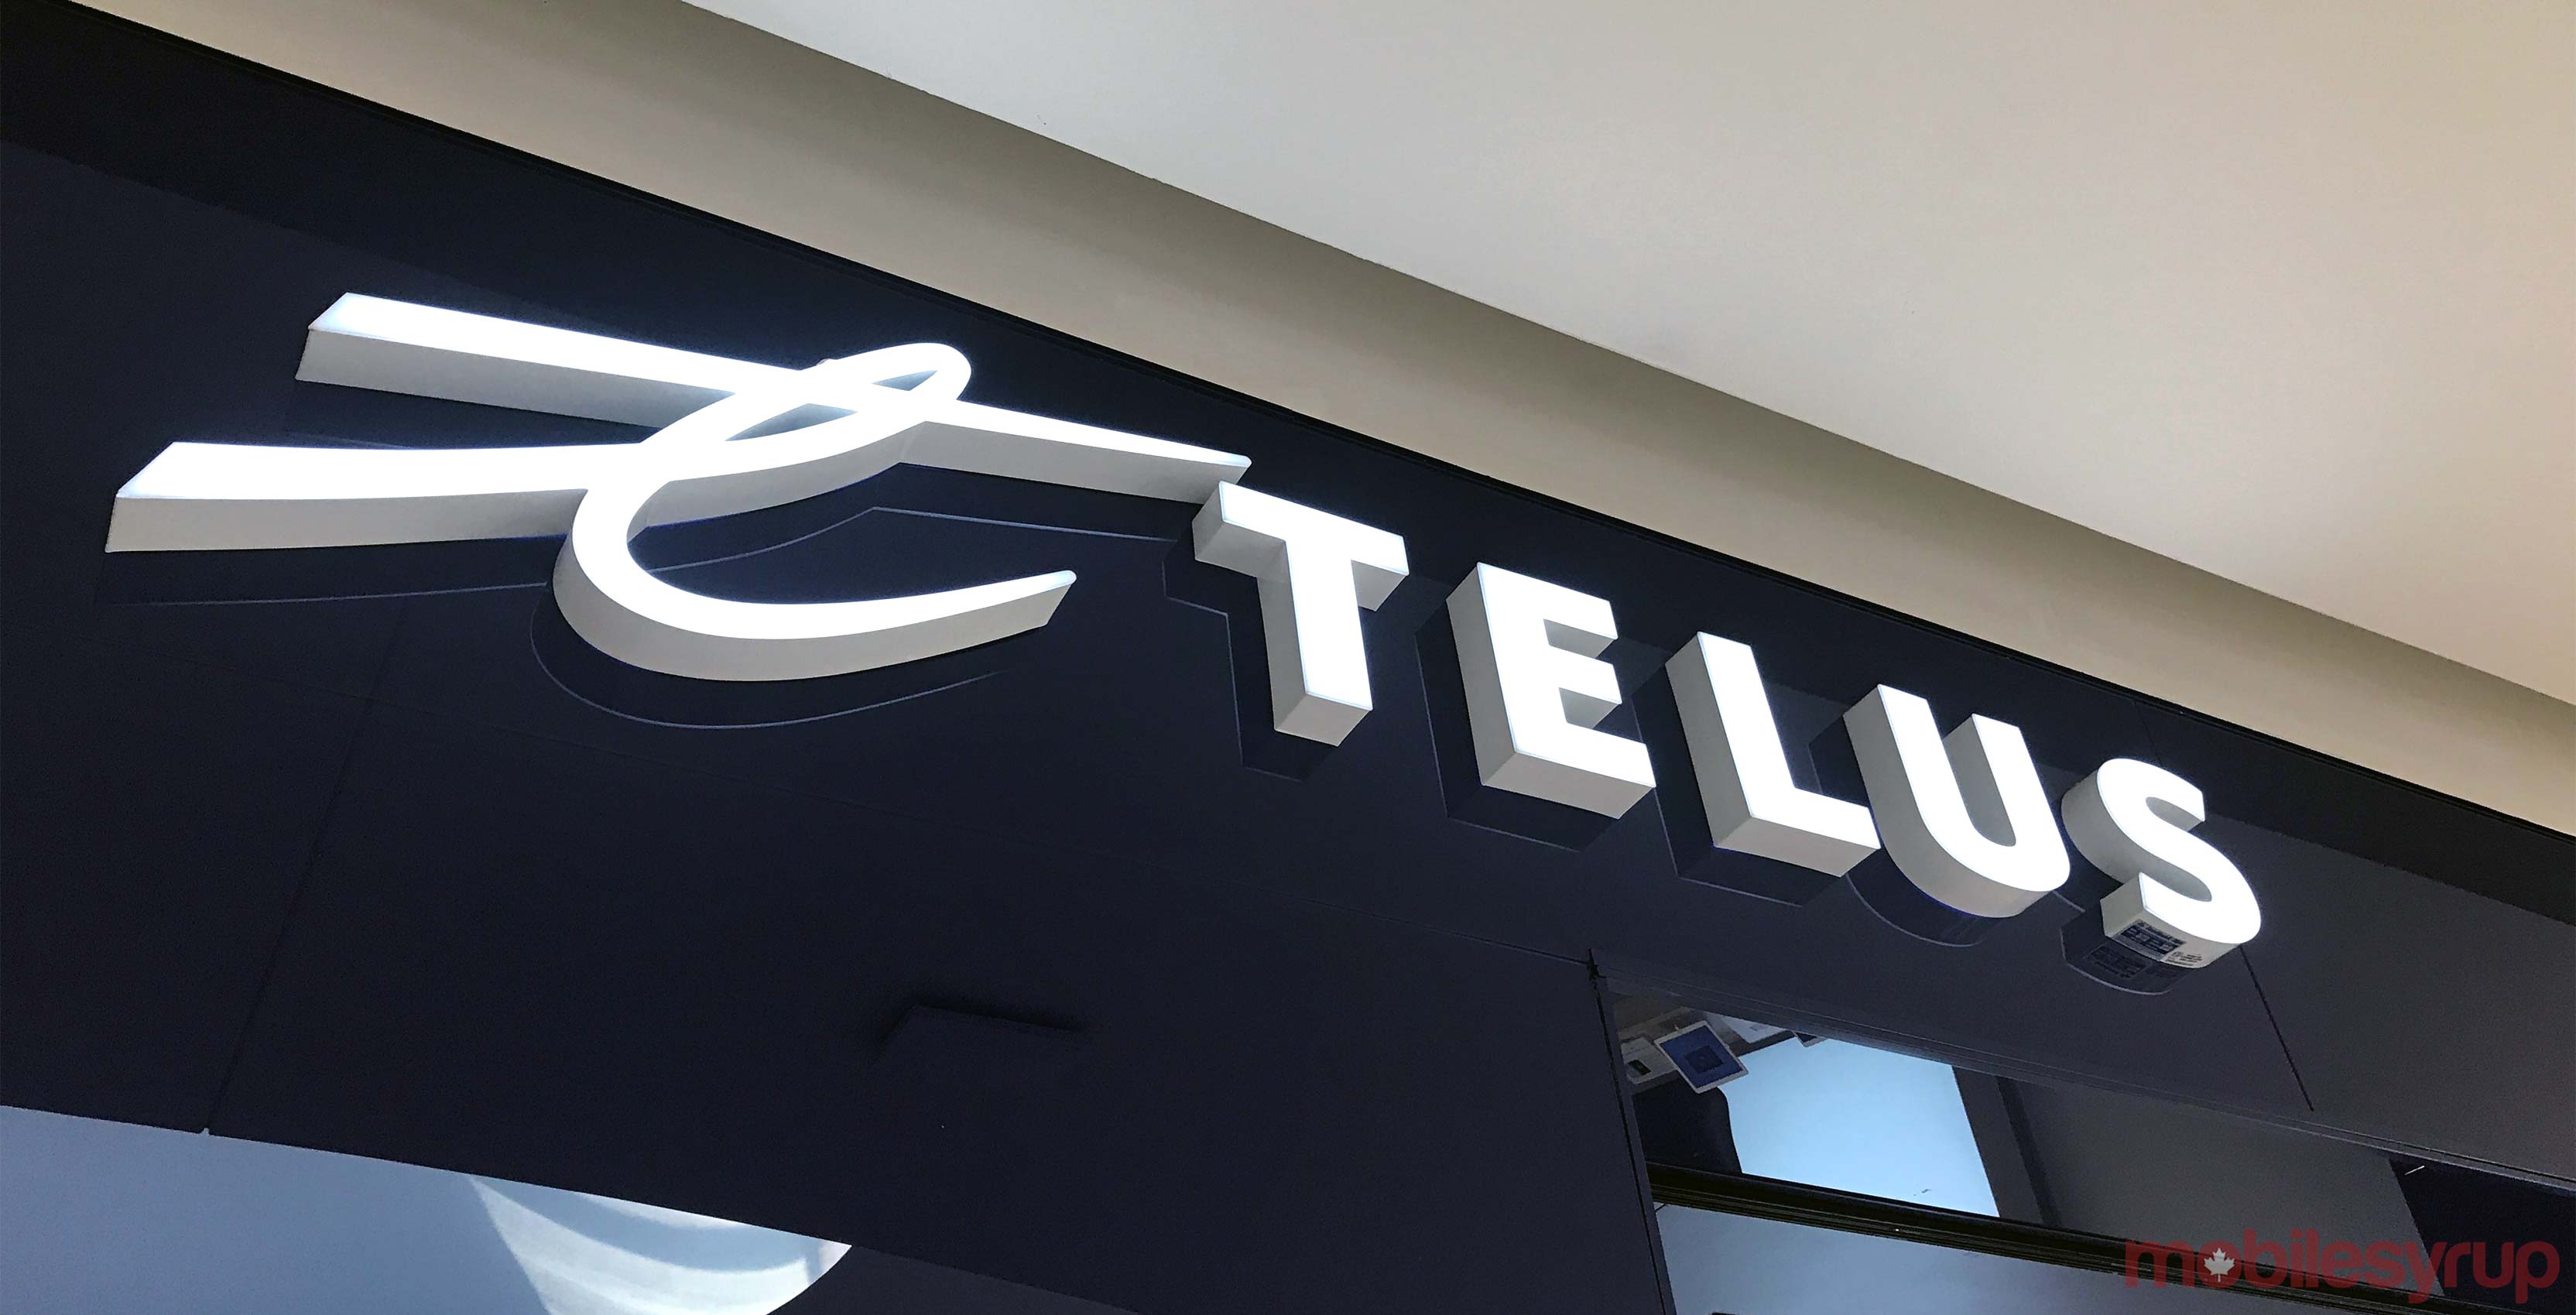 Telus logo with blue background